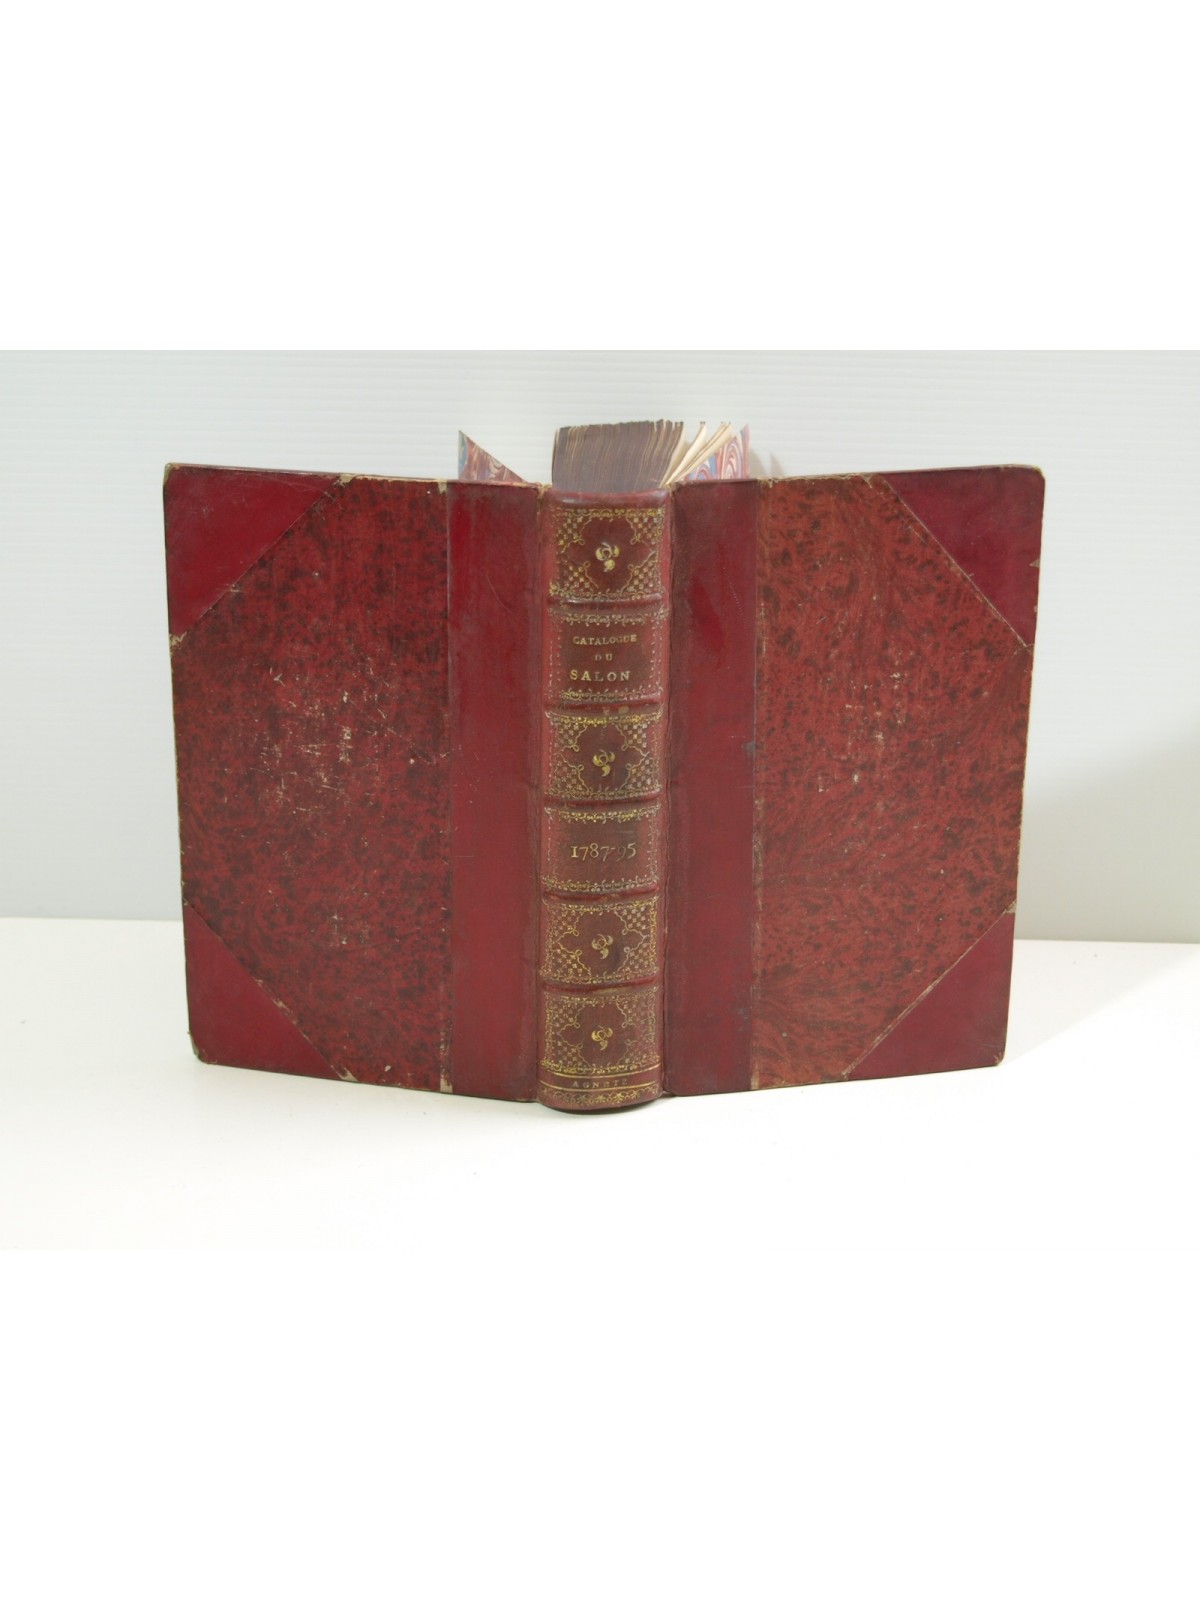 Collection des livrets des anciennes expositions. Réunion de 5 vol. de 1787 à 1795